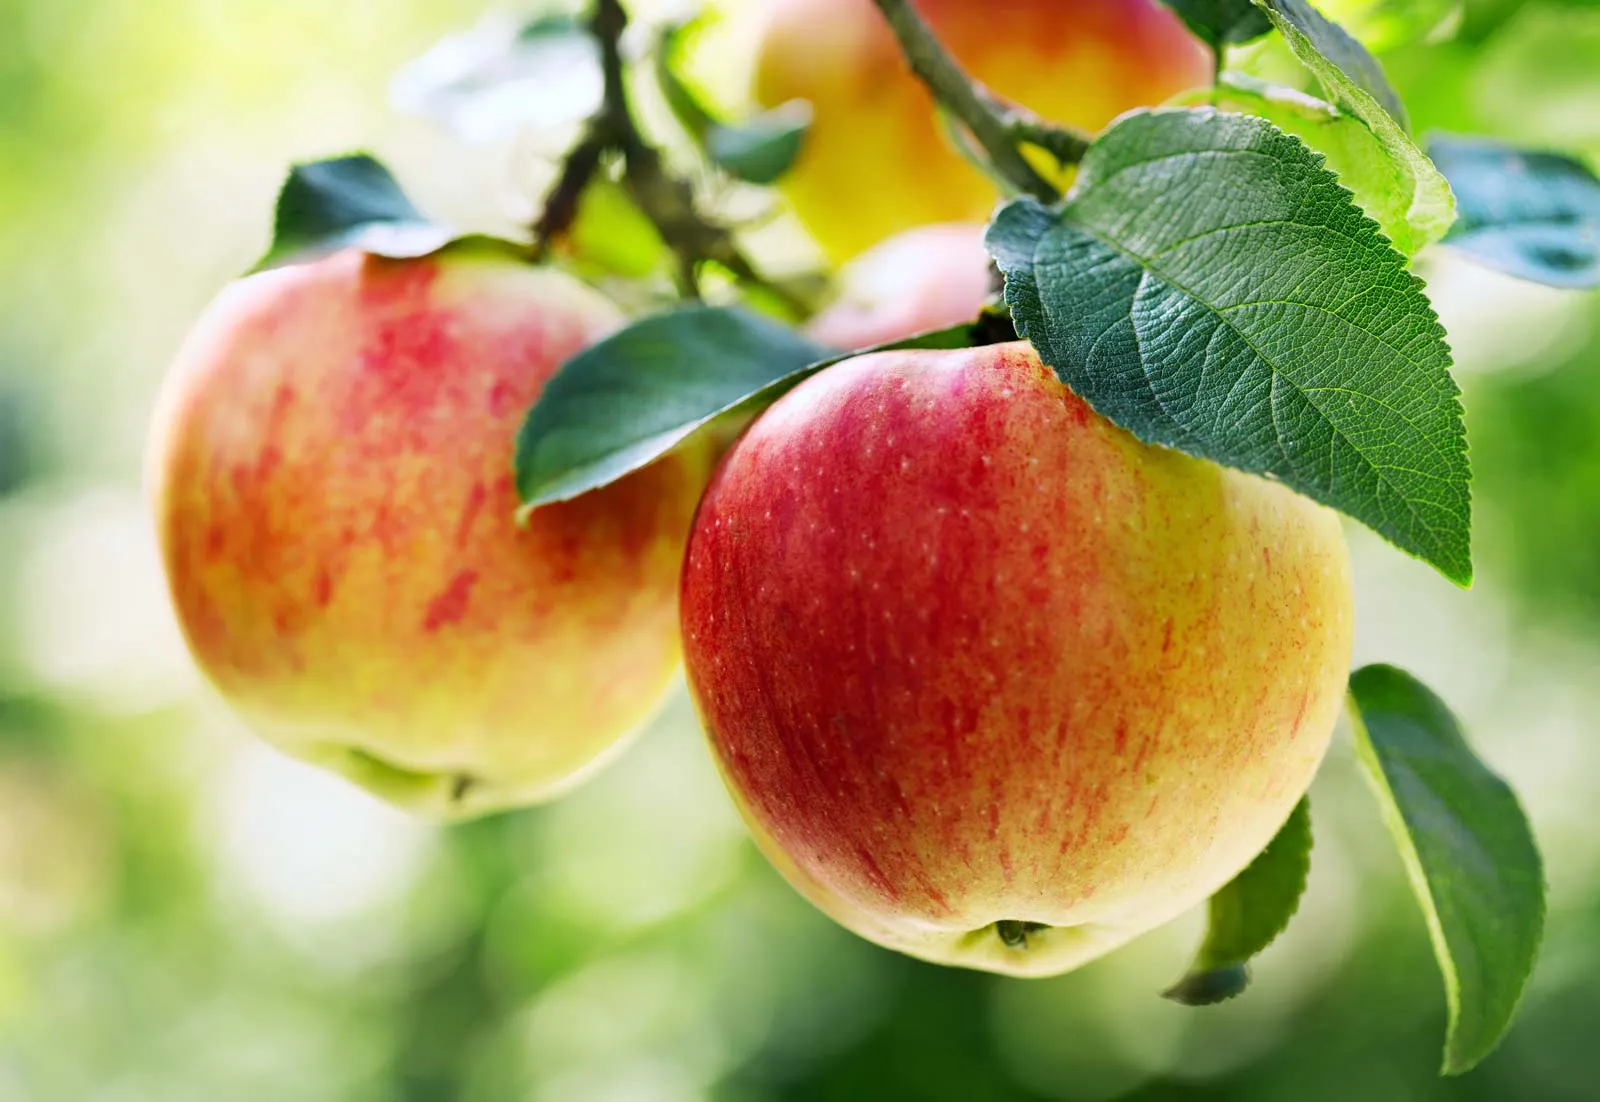 Introducción al cultivo y riego de cultivos de manzanas